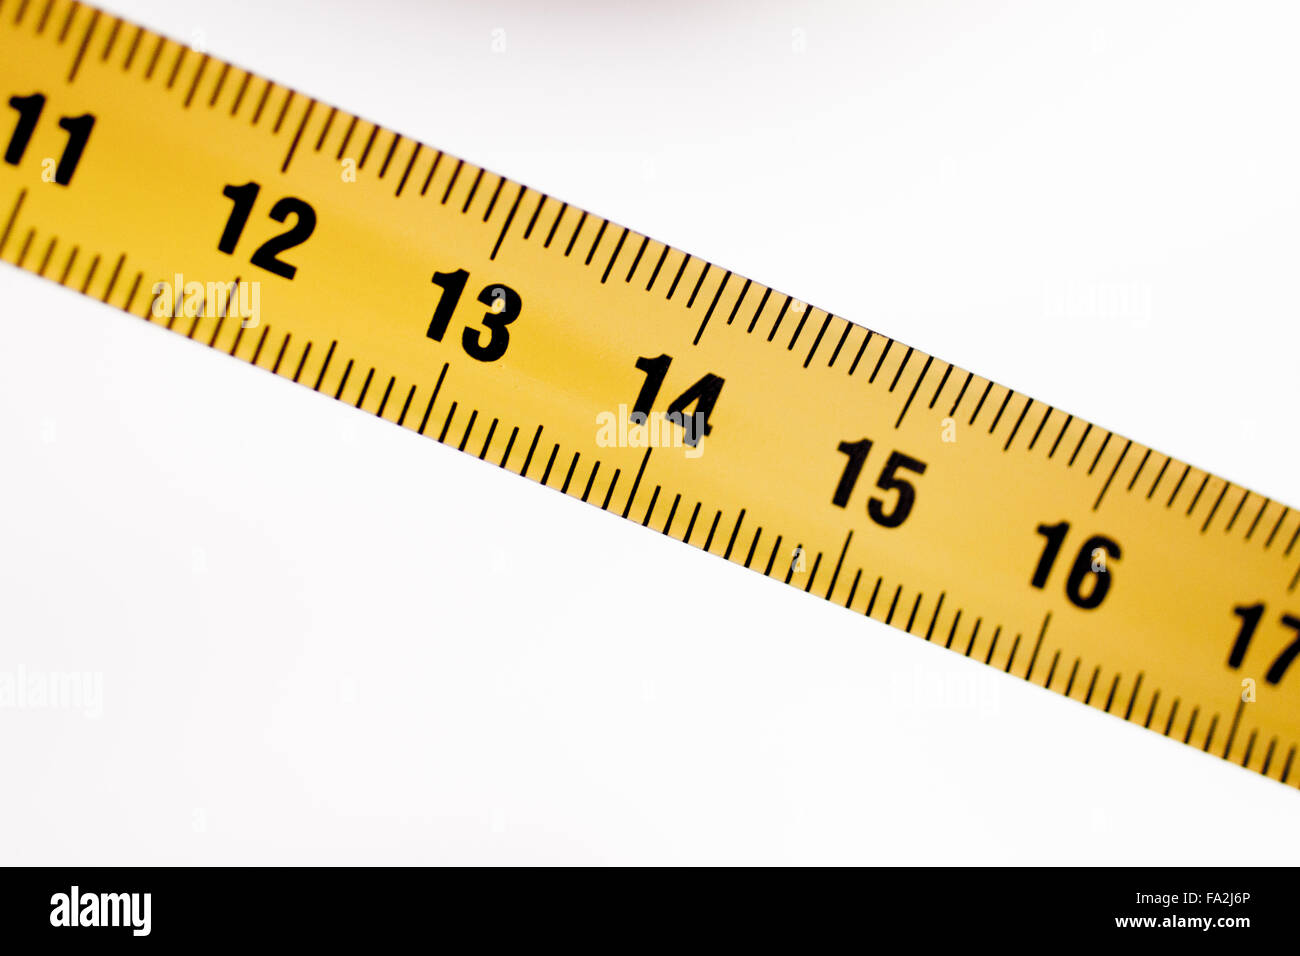 https://c8.alamy.com/comp/FA2J6P/measuring-tape-metal-ruler-showing-measuement-in-centimeters-cm-numbers-FA2J6P.jpg